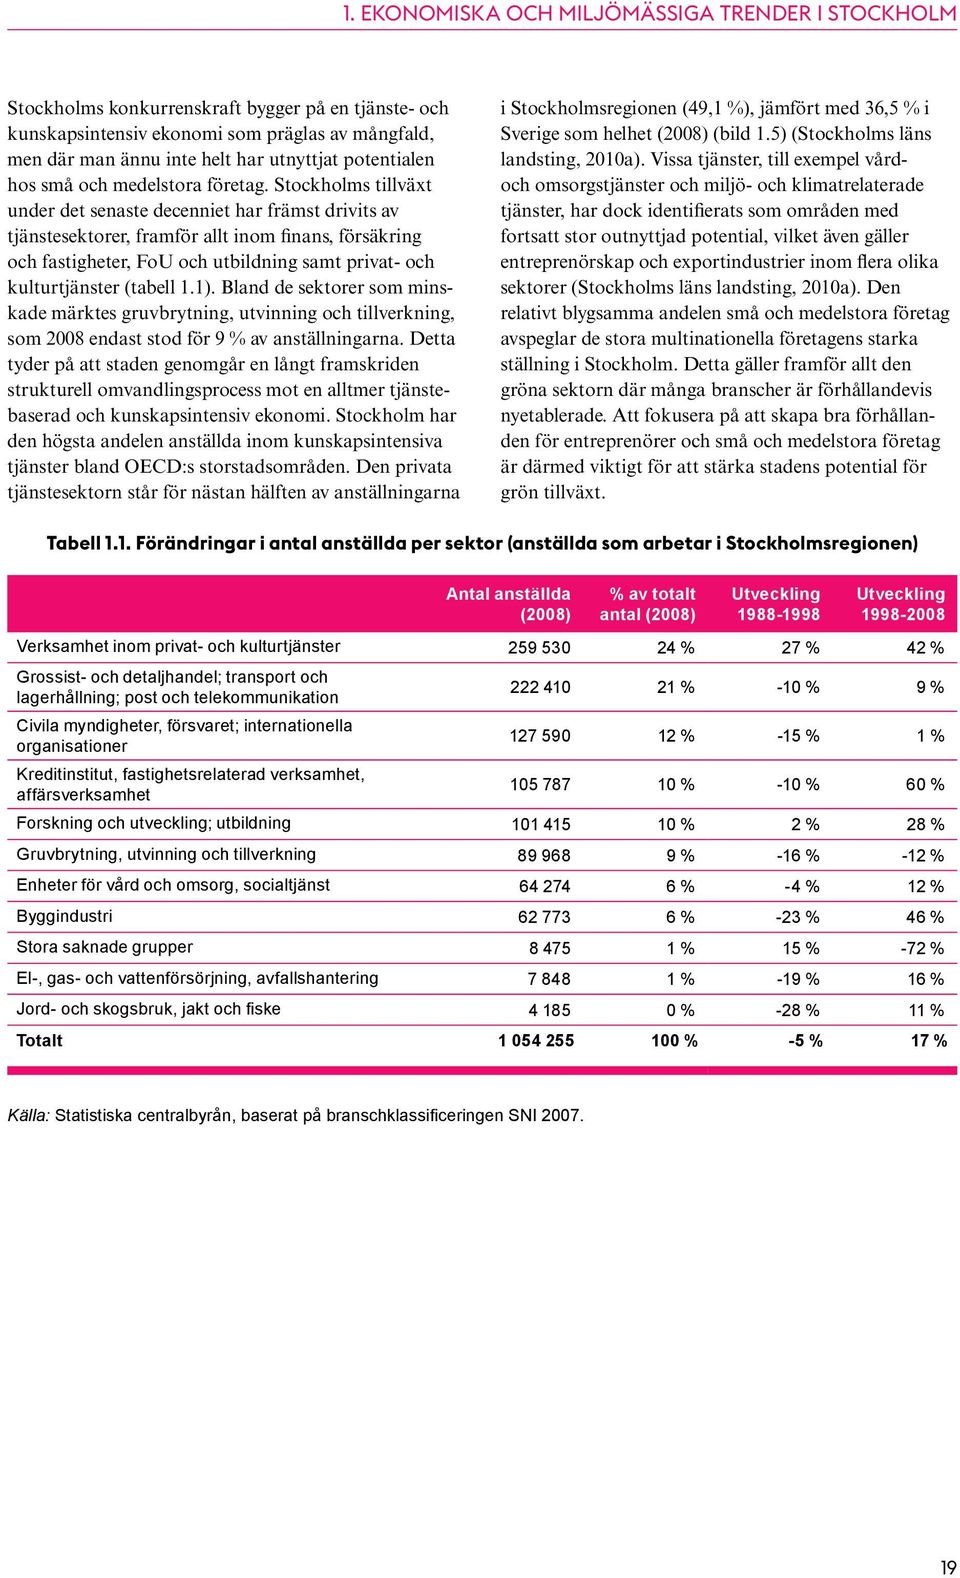 Stockholms tillväxt under det senaste decenniet har främst drivits av tjänstesektorer, framför allt inom finans, försäkring och fastigheter, FoU och utbildning samt privat- och kulturtjänster (tabell